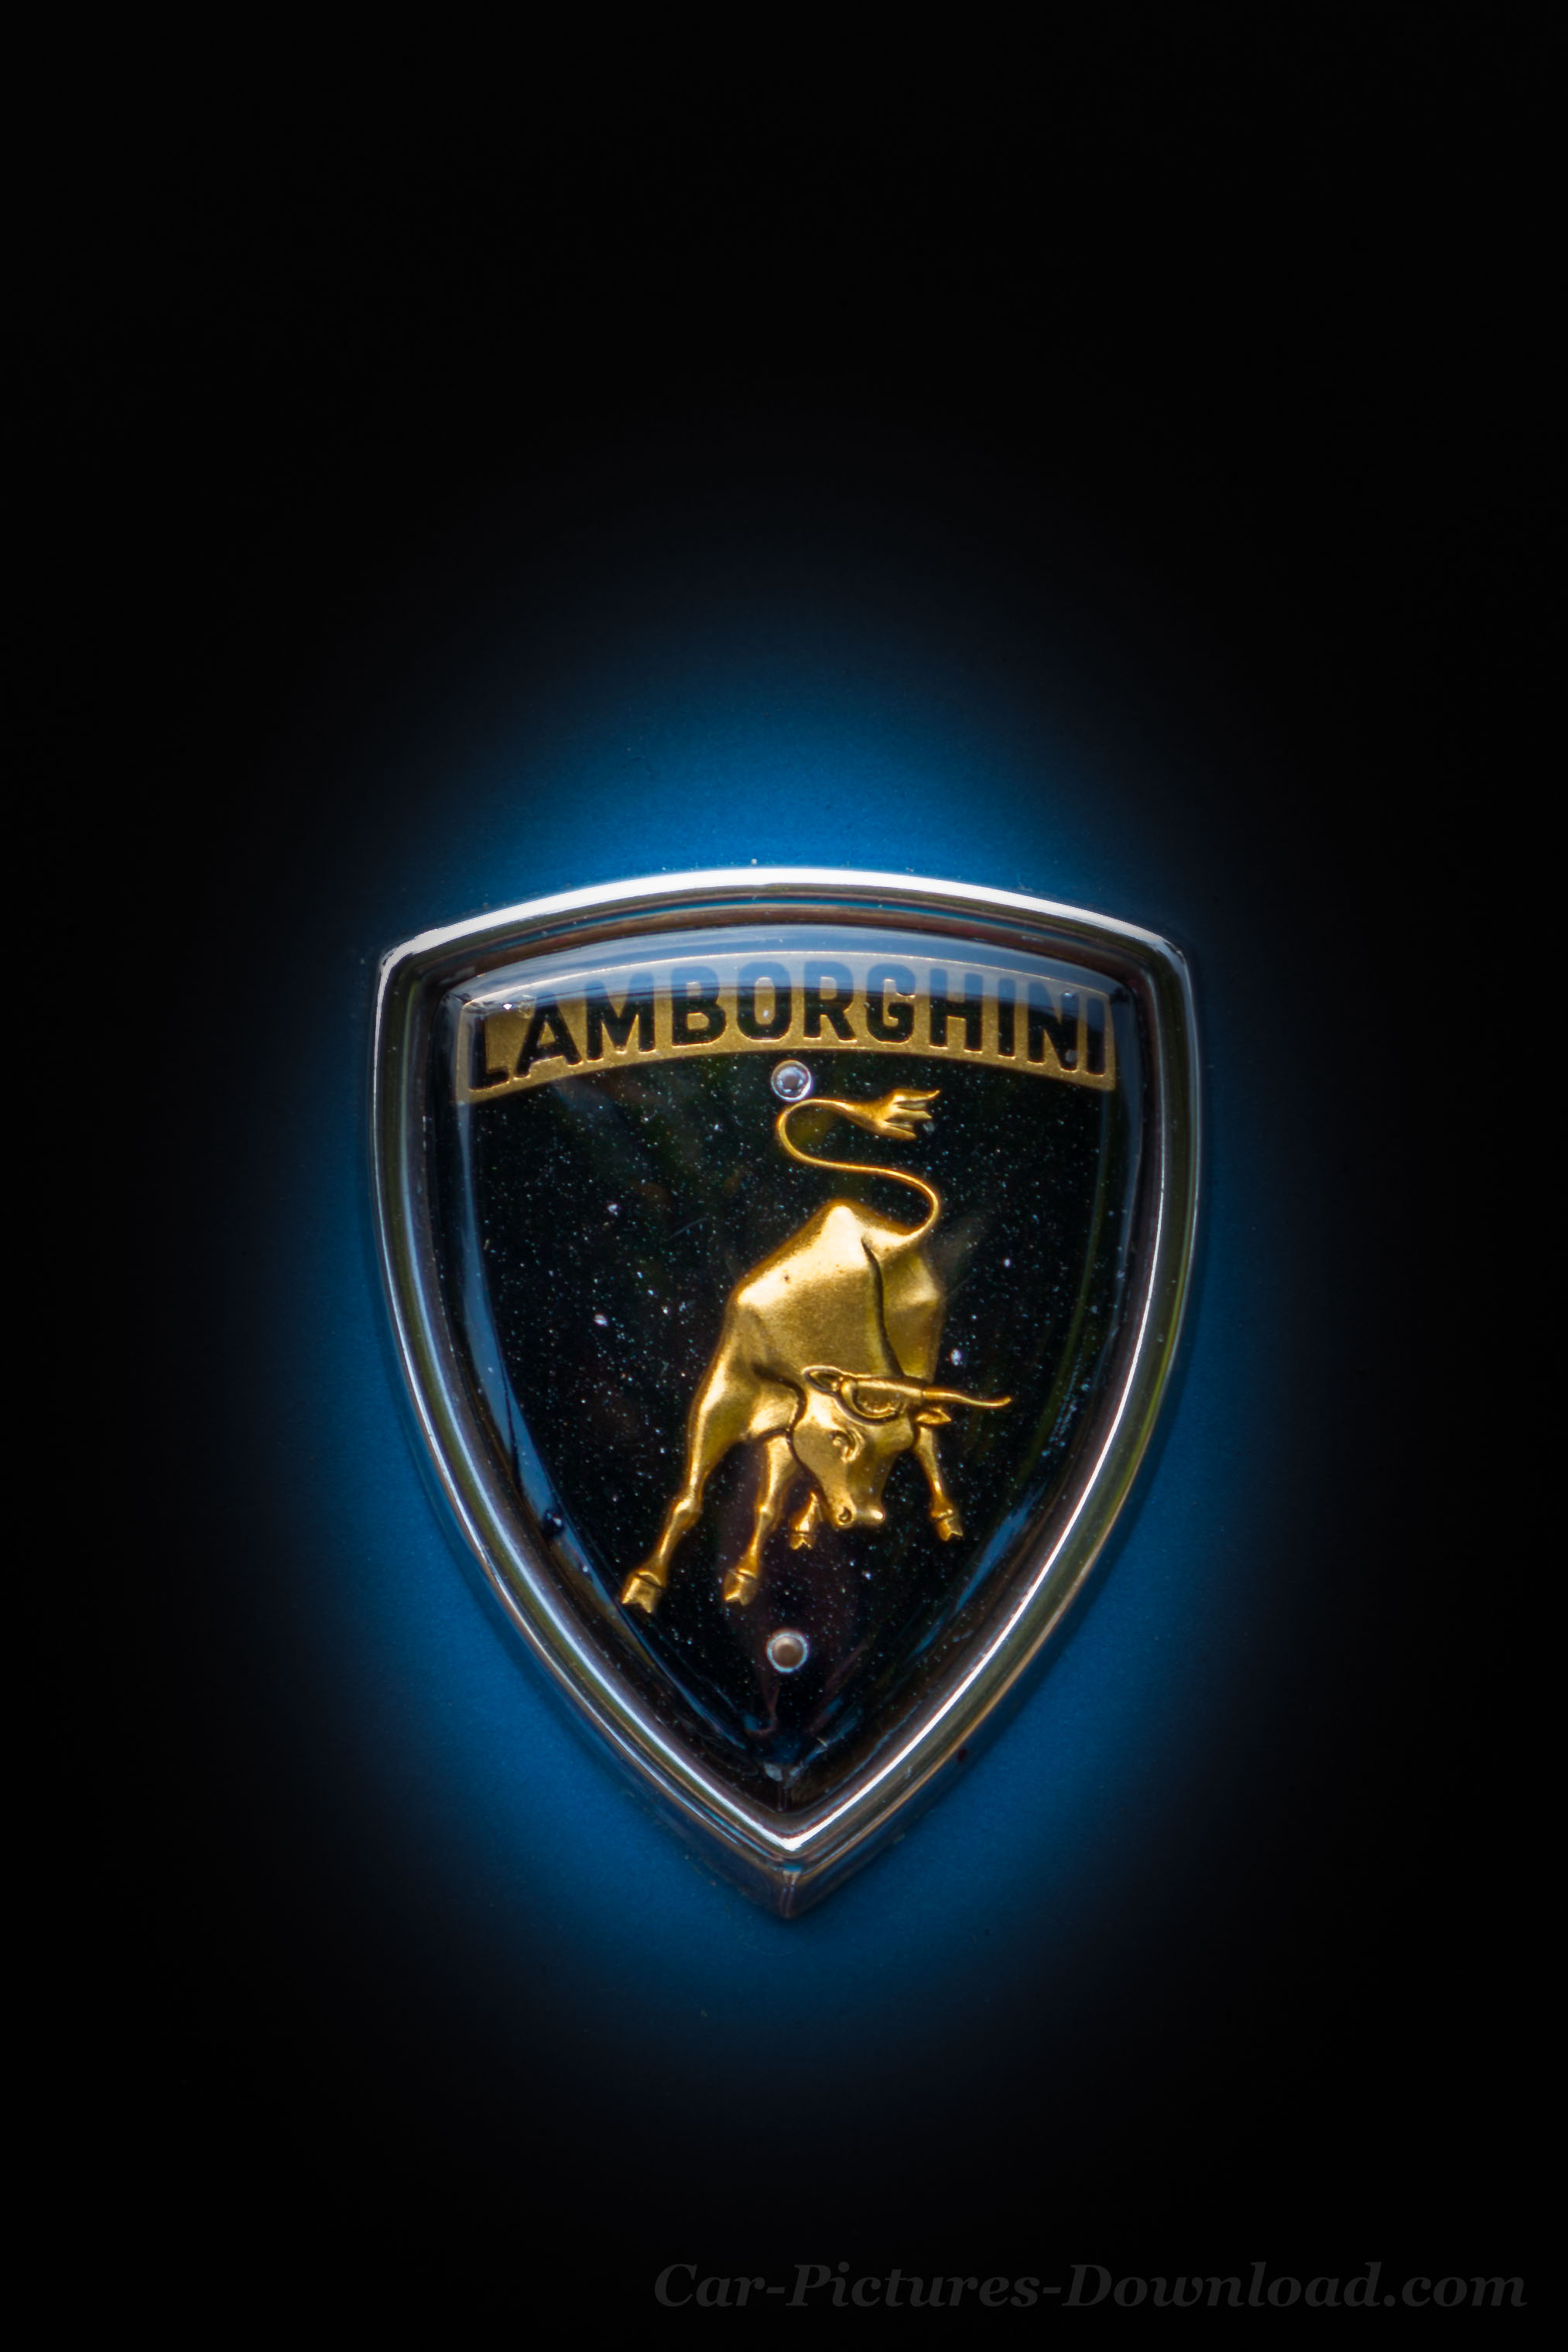 Lamborghini Wallpaper HD Logo Image In Hi Res To